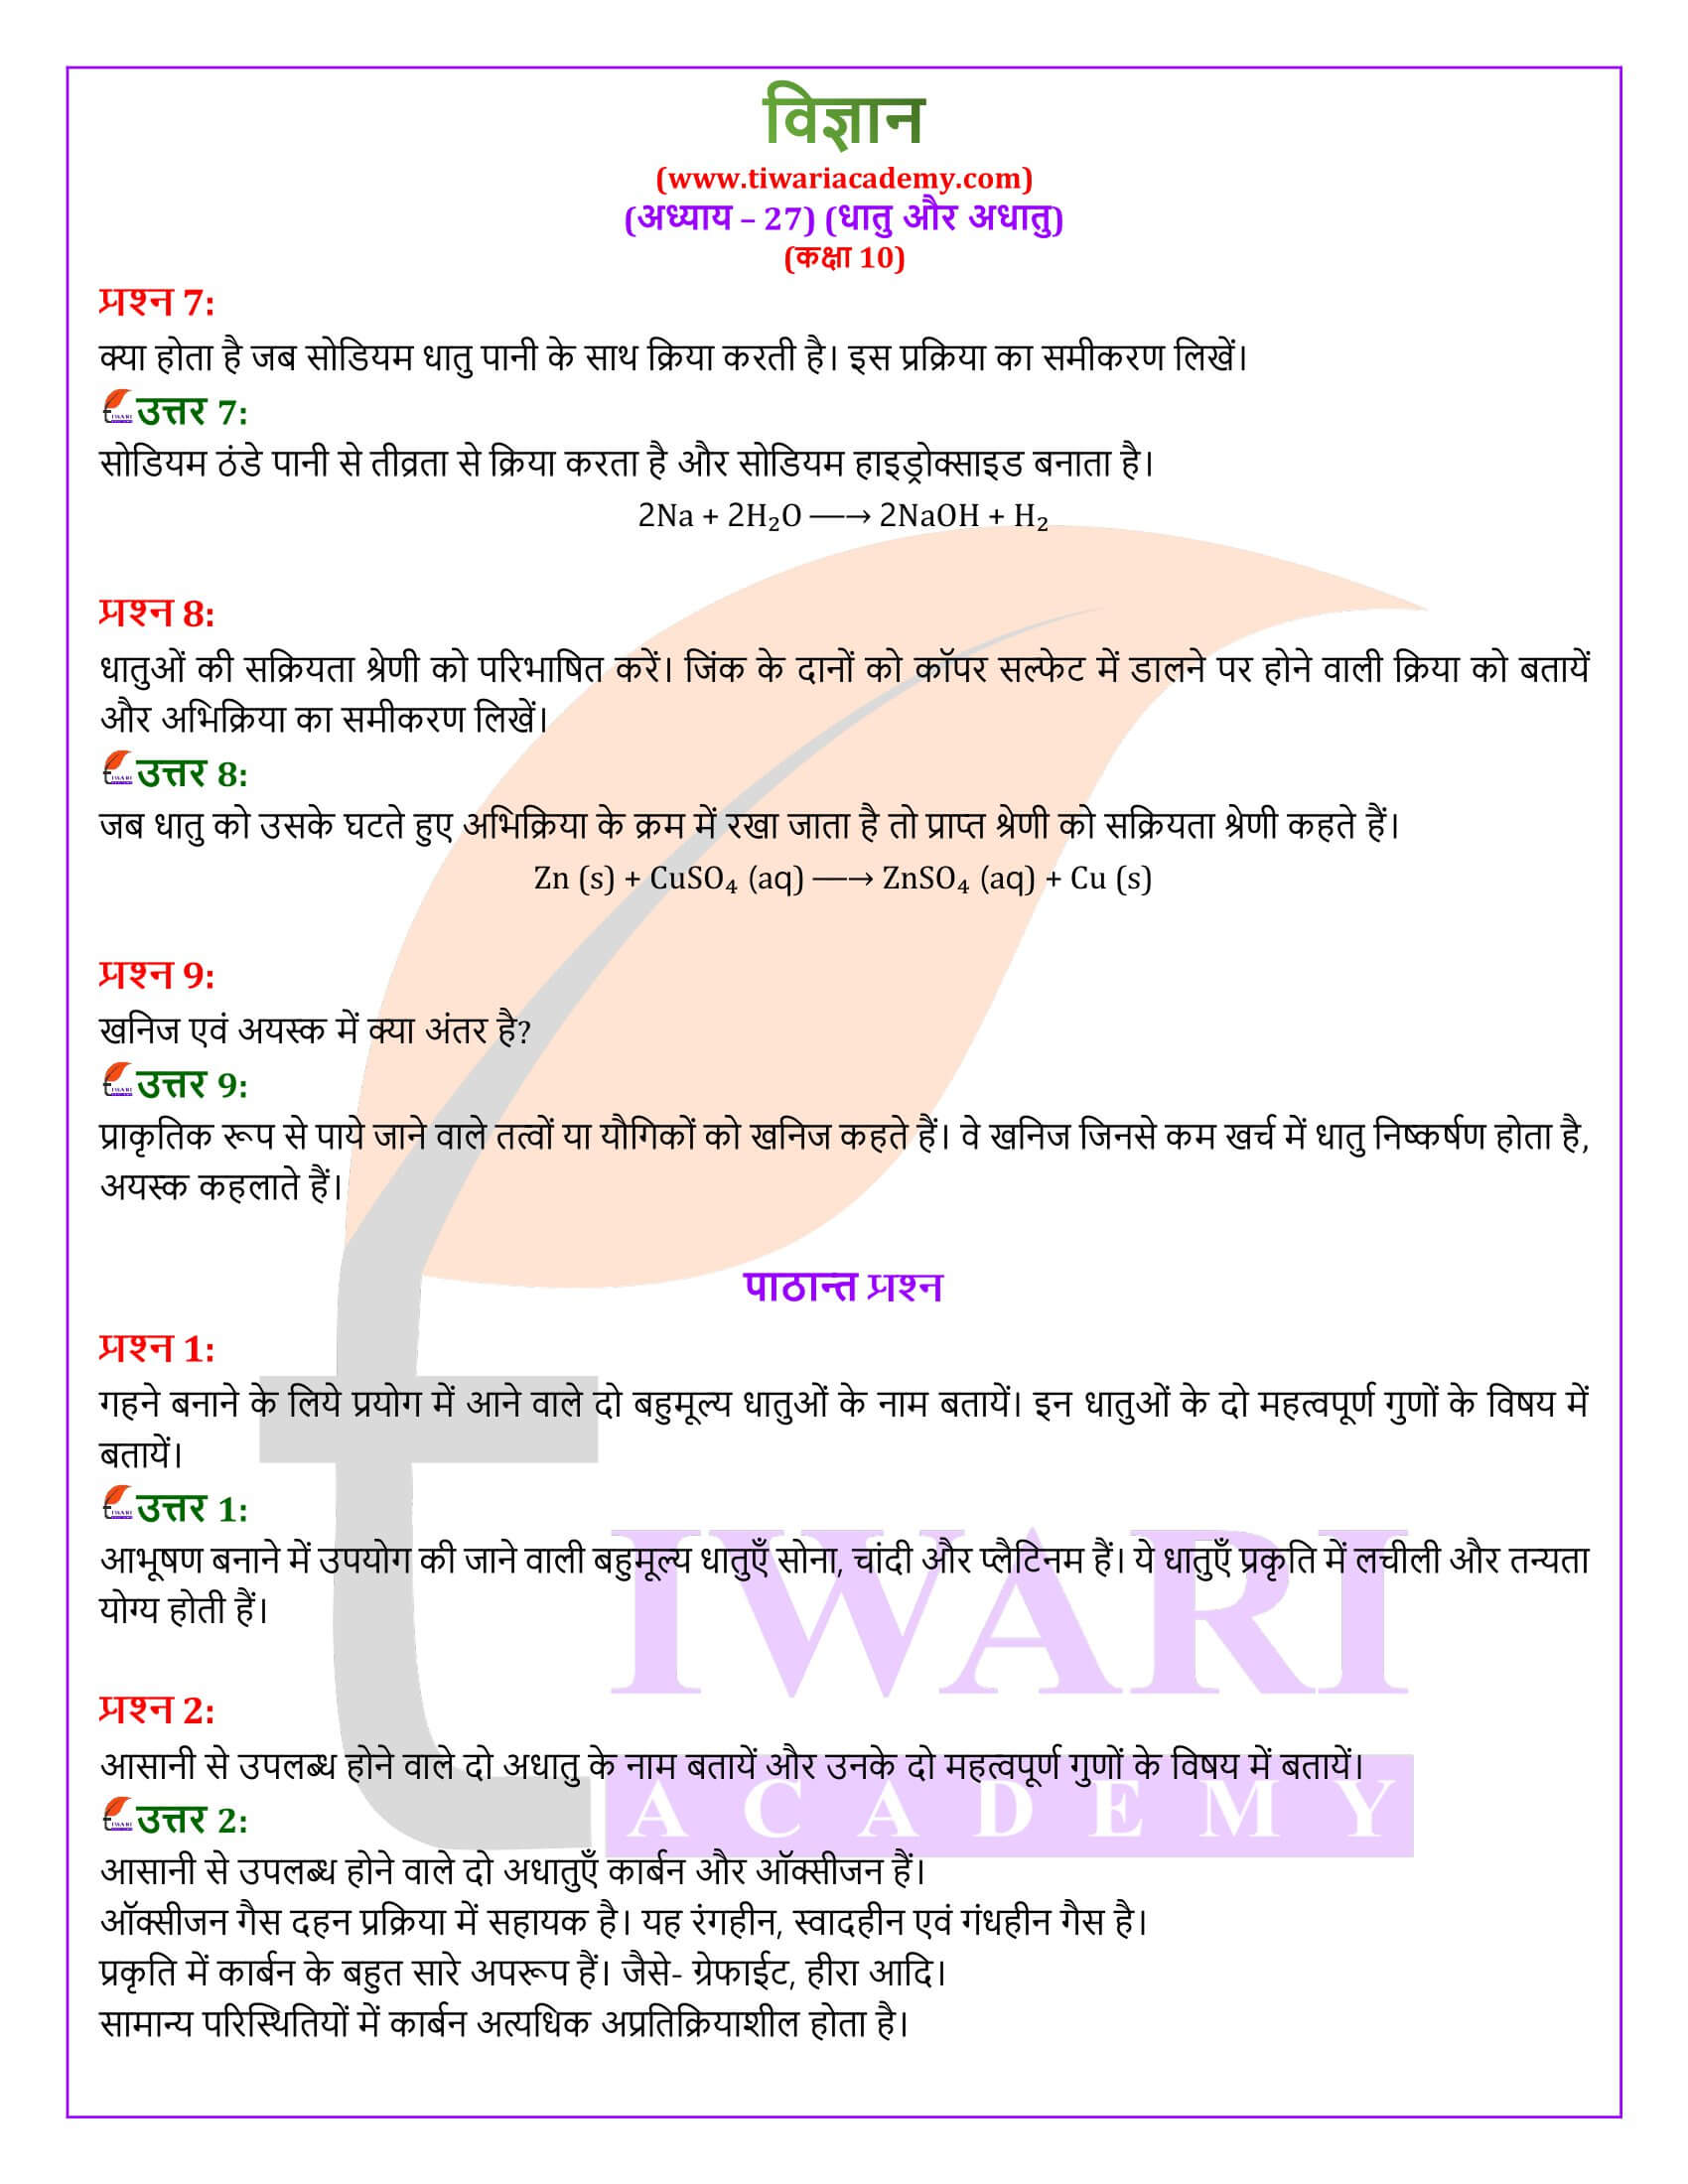 NIOS के लिए कक्षा 10 विज्ञान अध्याय 27 हिंदी मीडियम में